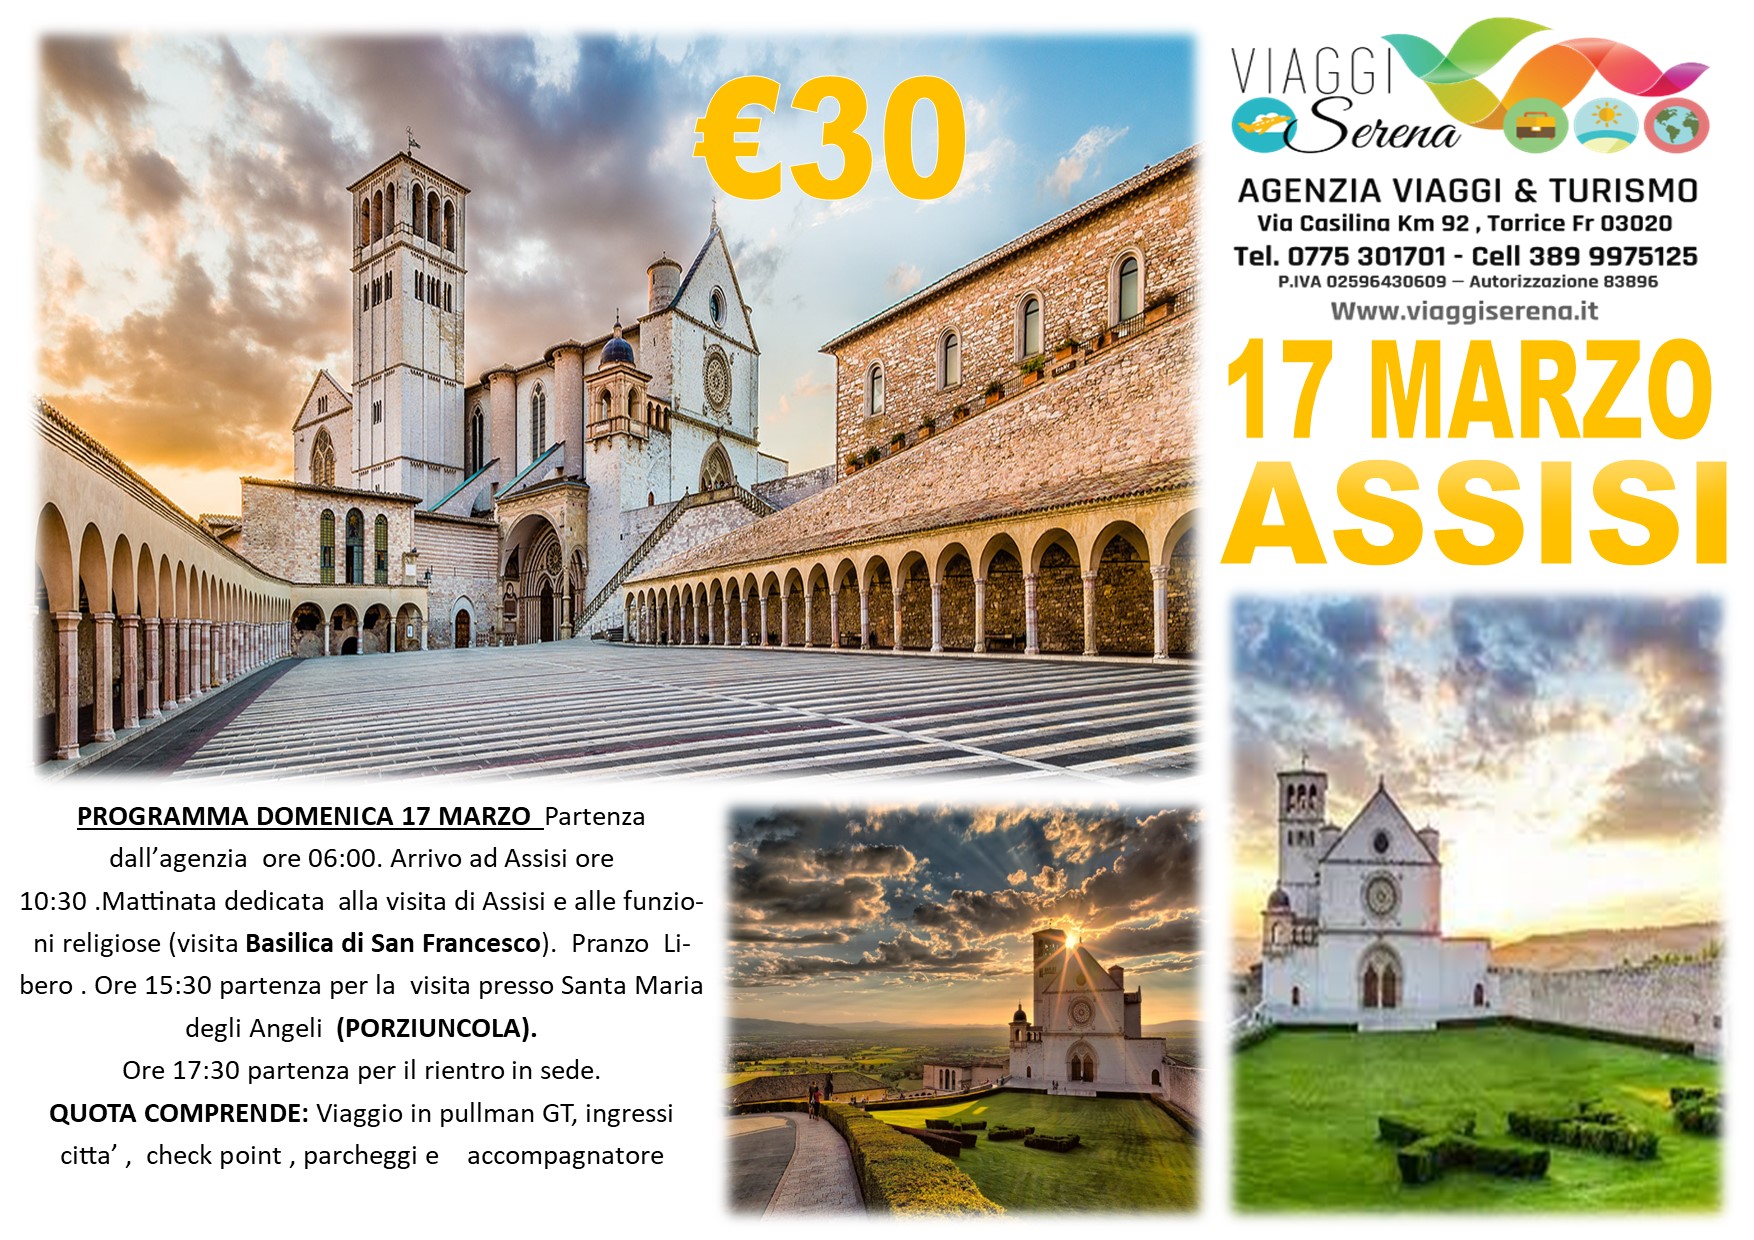 Viaggi di gruppo: Assisi & Santa Maria degli Angeli “La Porziuncola” 17 Marzo €30,00